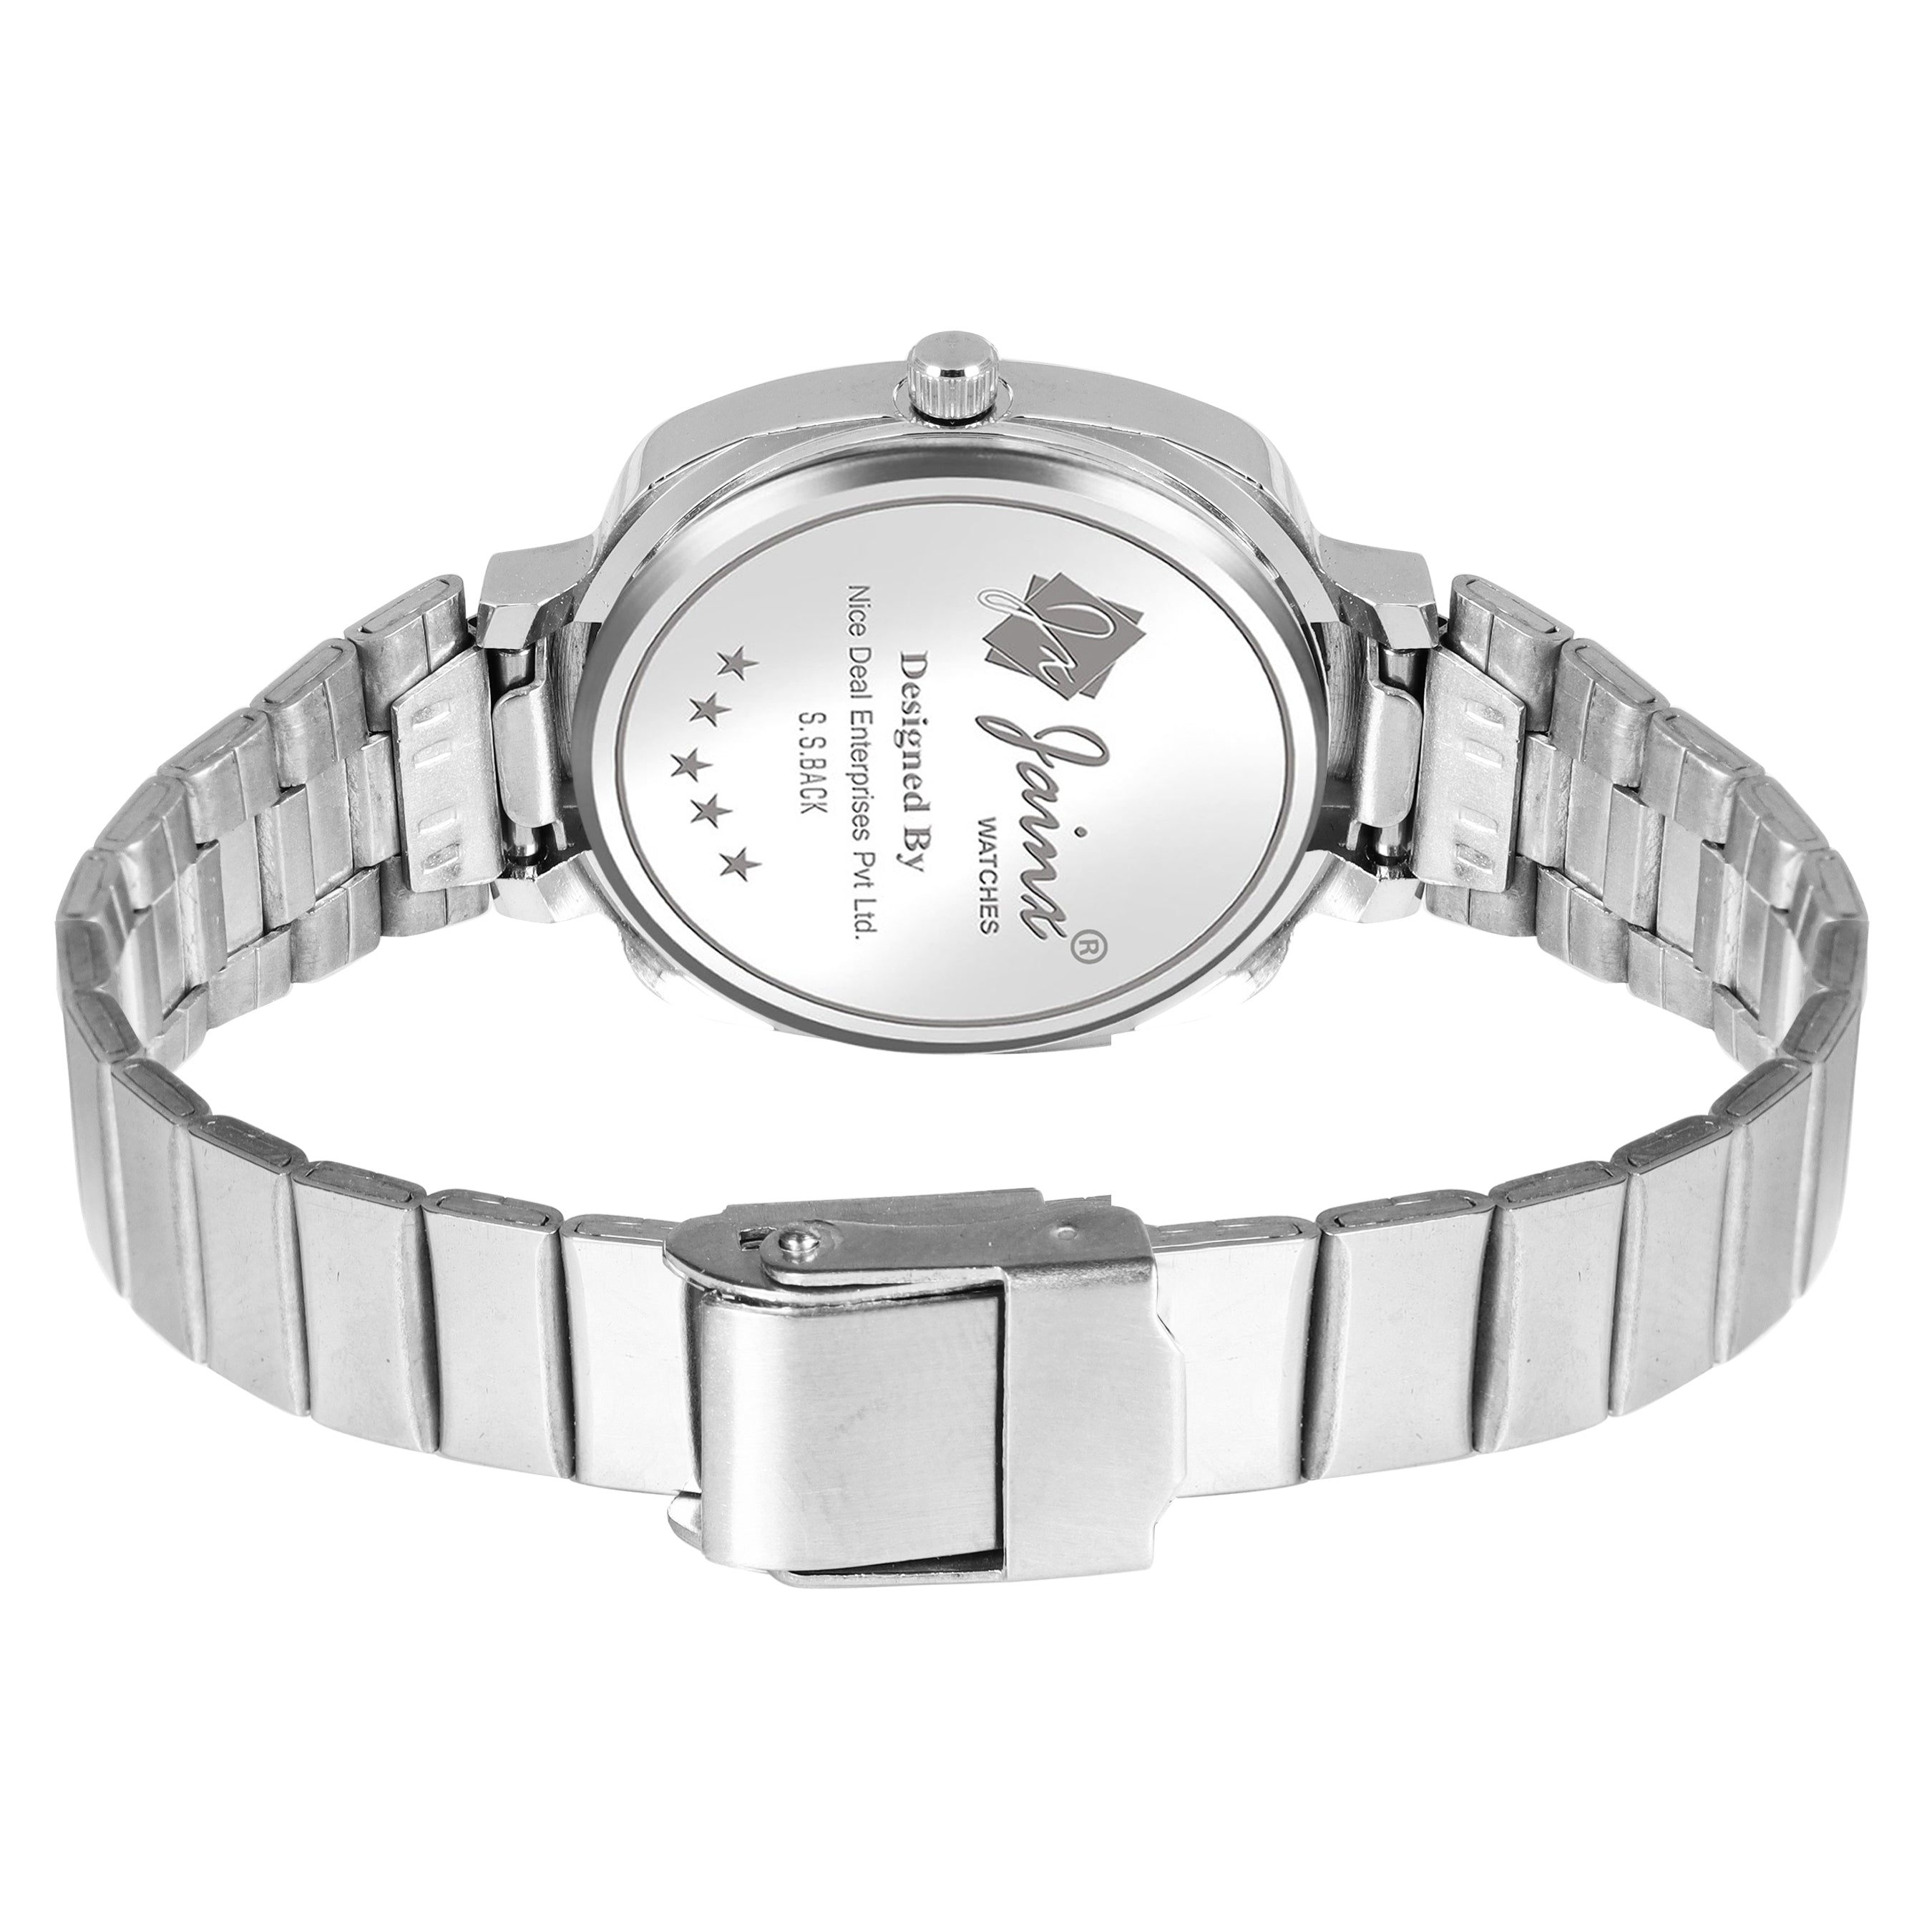 Jainx Blue Steel Chain Analog Watch - For Women JW8540 - Jainx Store